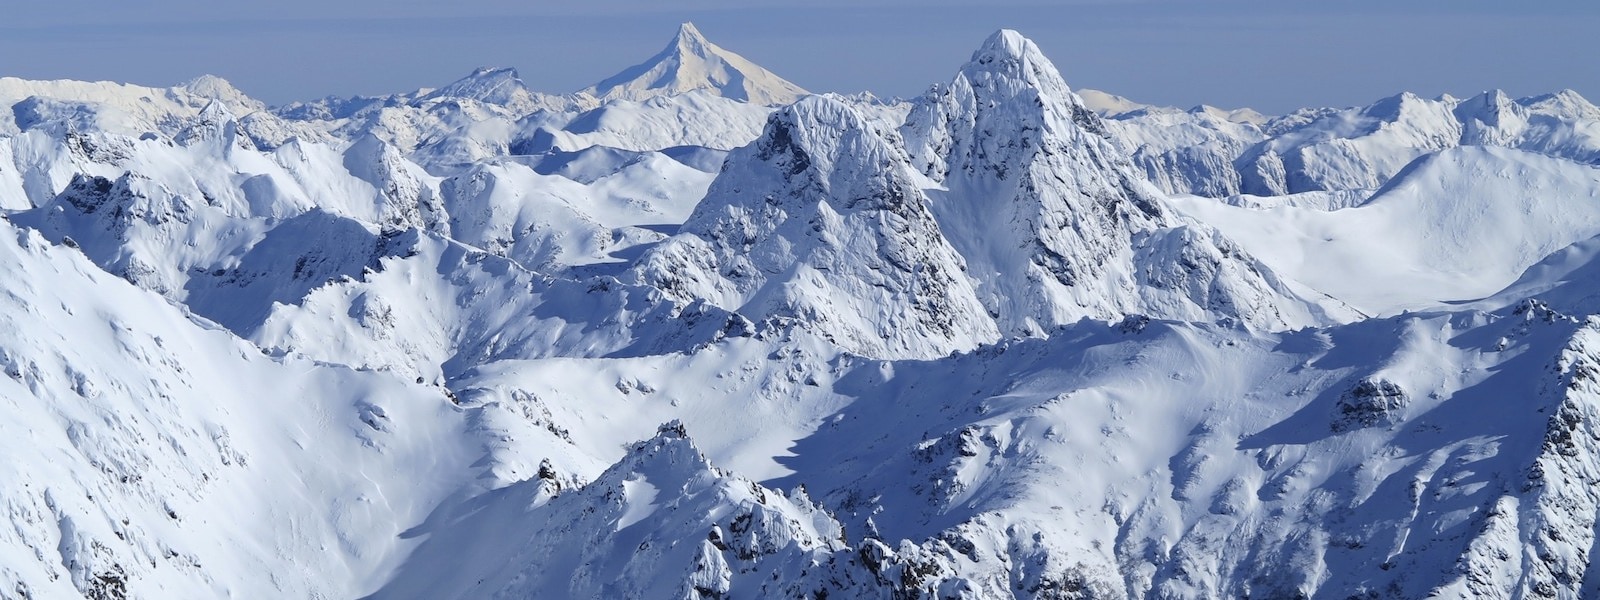 Cerro Catedral Bariloche Ski Resort 2020s Updated Guide - 